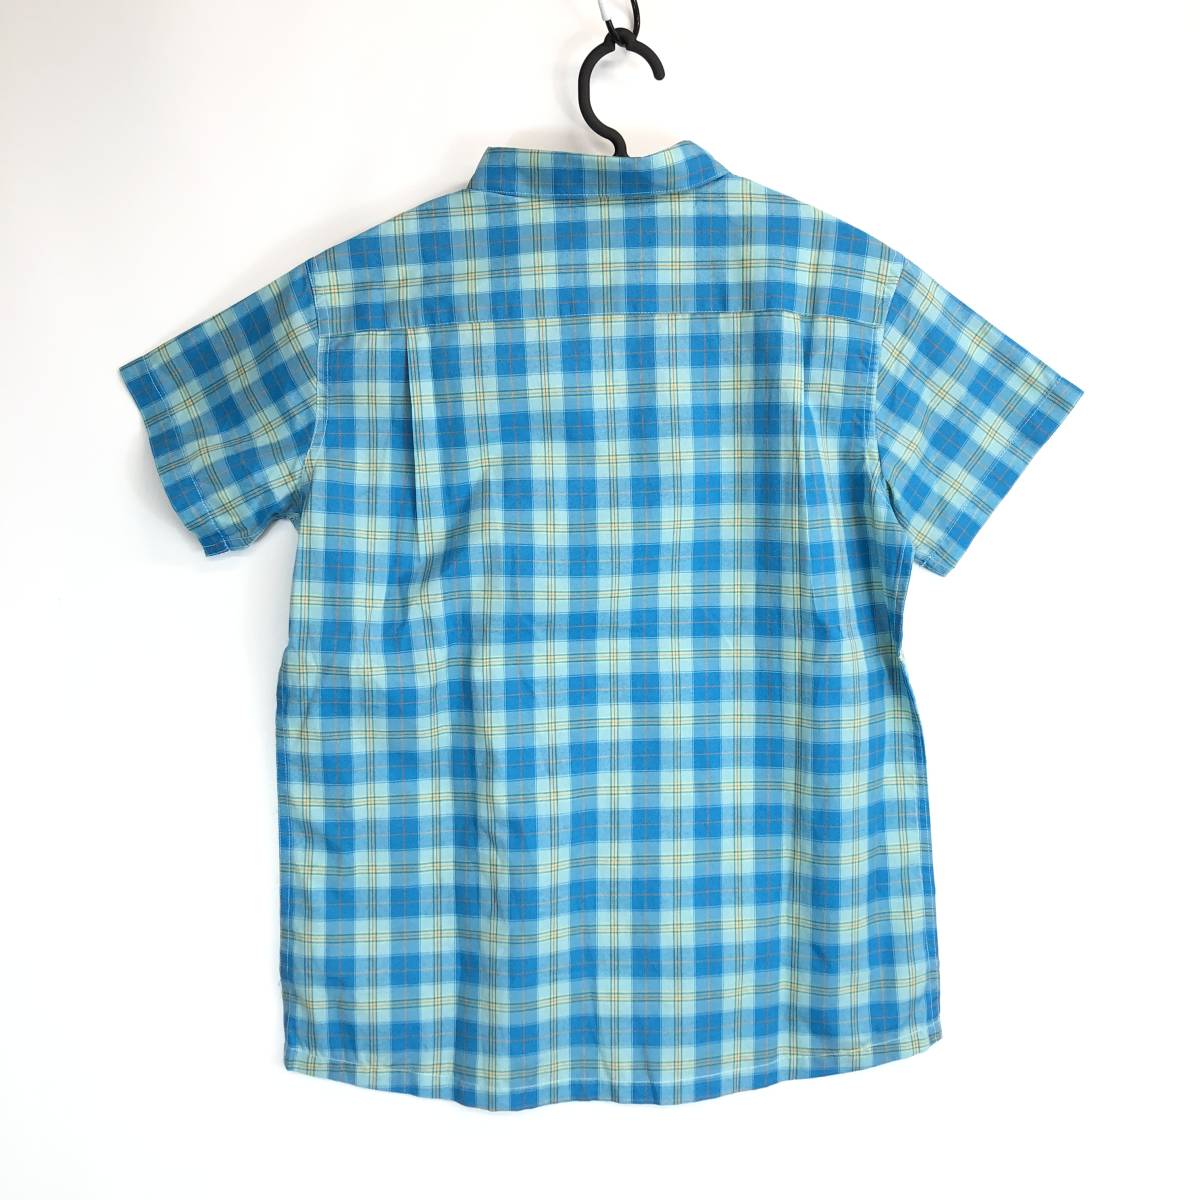 MOUNTAIN EQUIPMENT マウンテンイクイップメント 半袖ボタンシャツ チェック柄 ブルー系 レディースSサイズ 422826